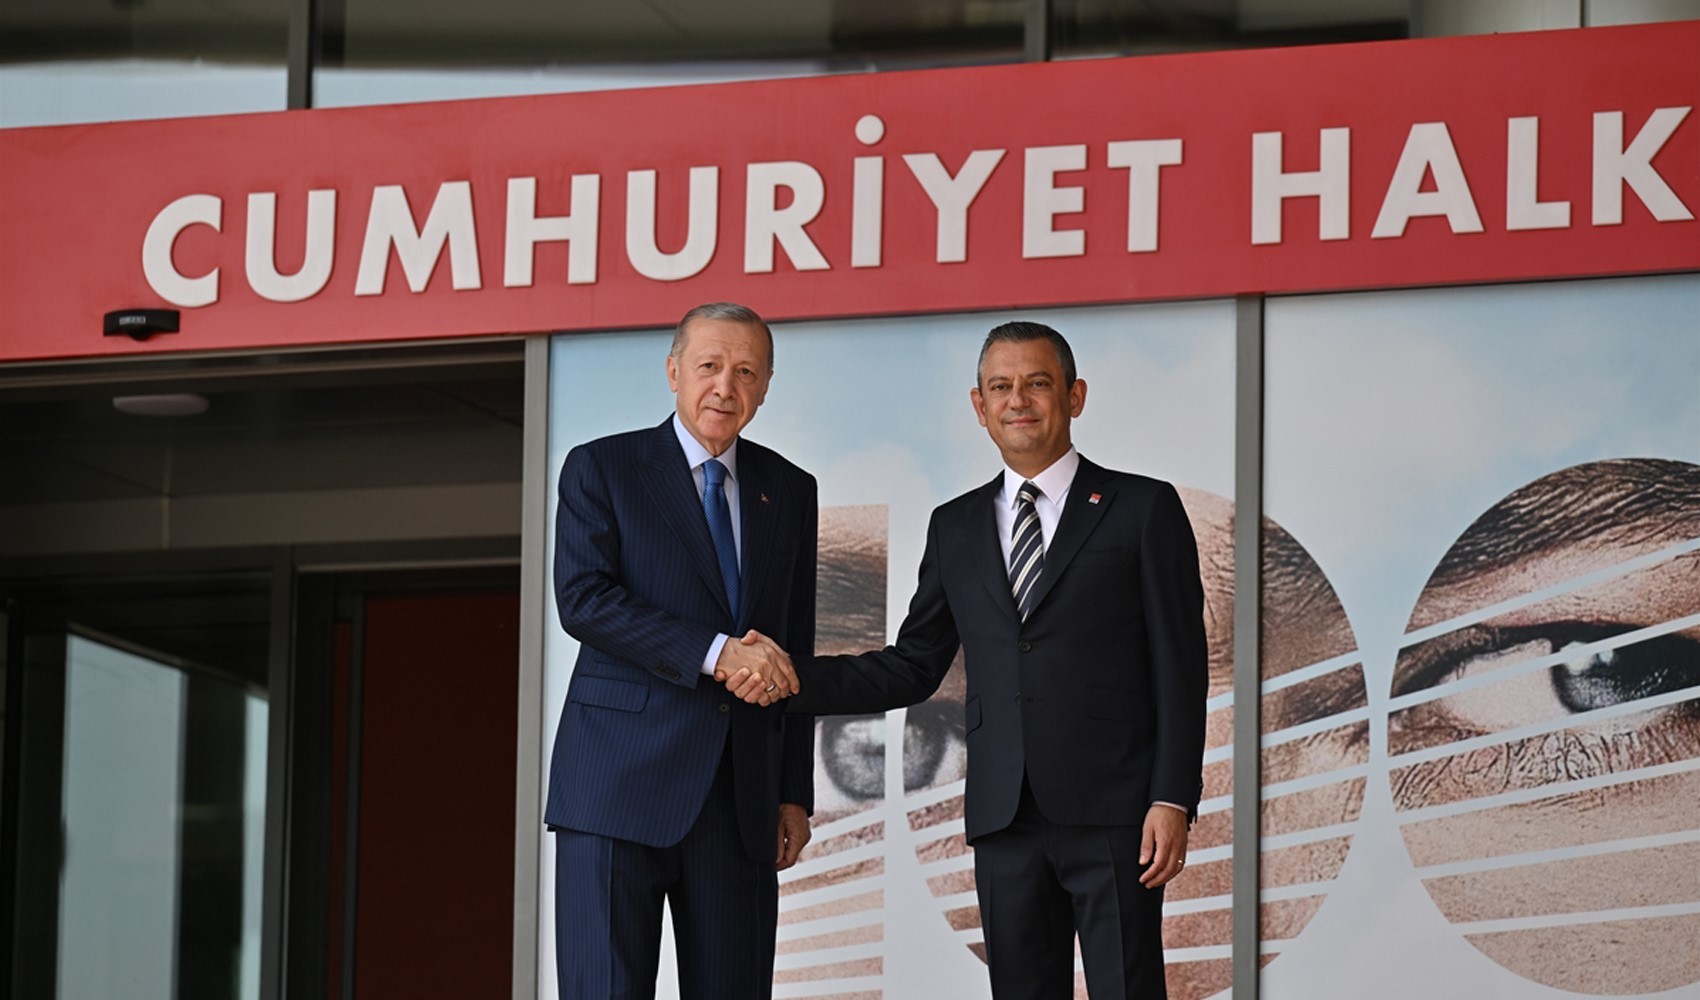 Cumhurbaşkanı ve AKP Genel Başkanı Recep Tayyip Erdoğan, CHP lideri Özgür Özel ile CHP Genel Merkezi'nde görüştü